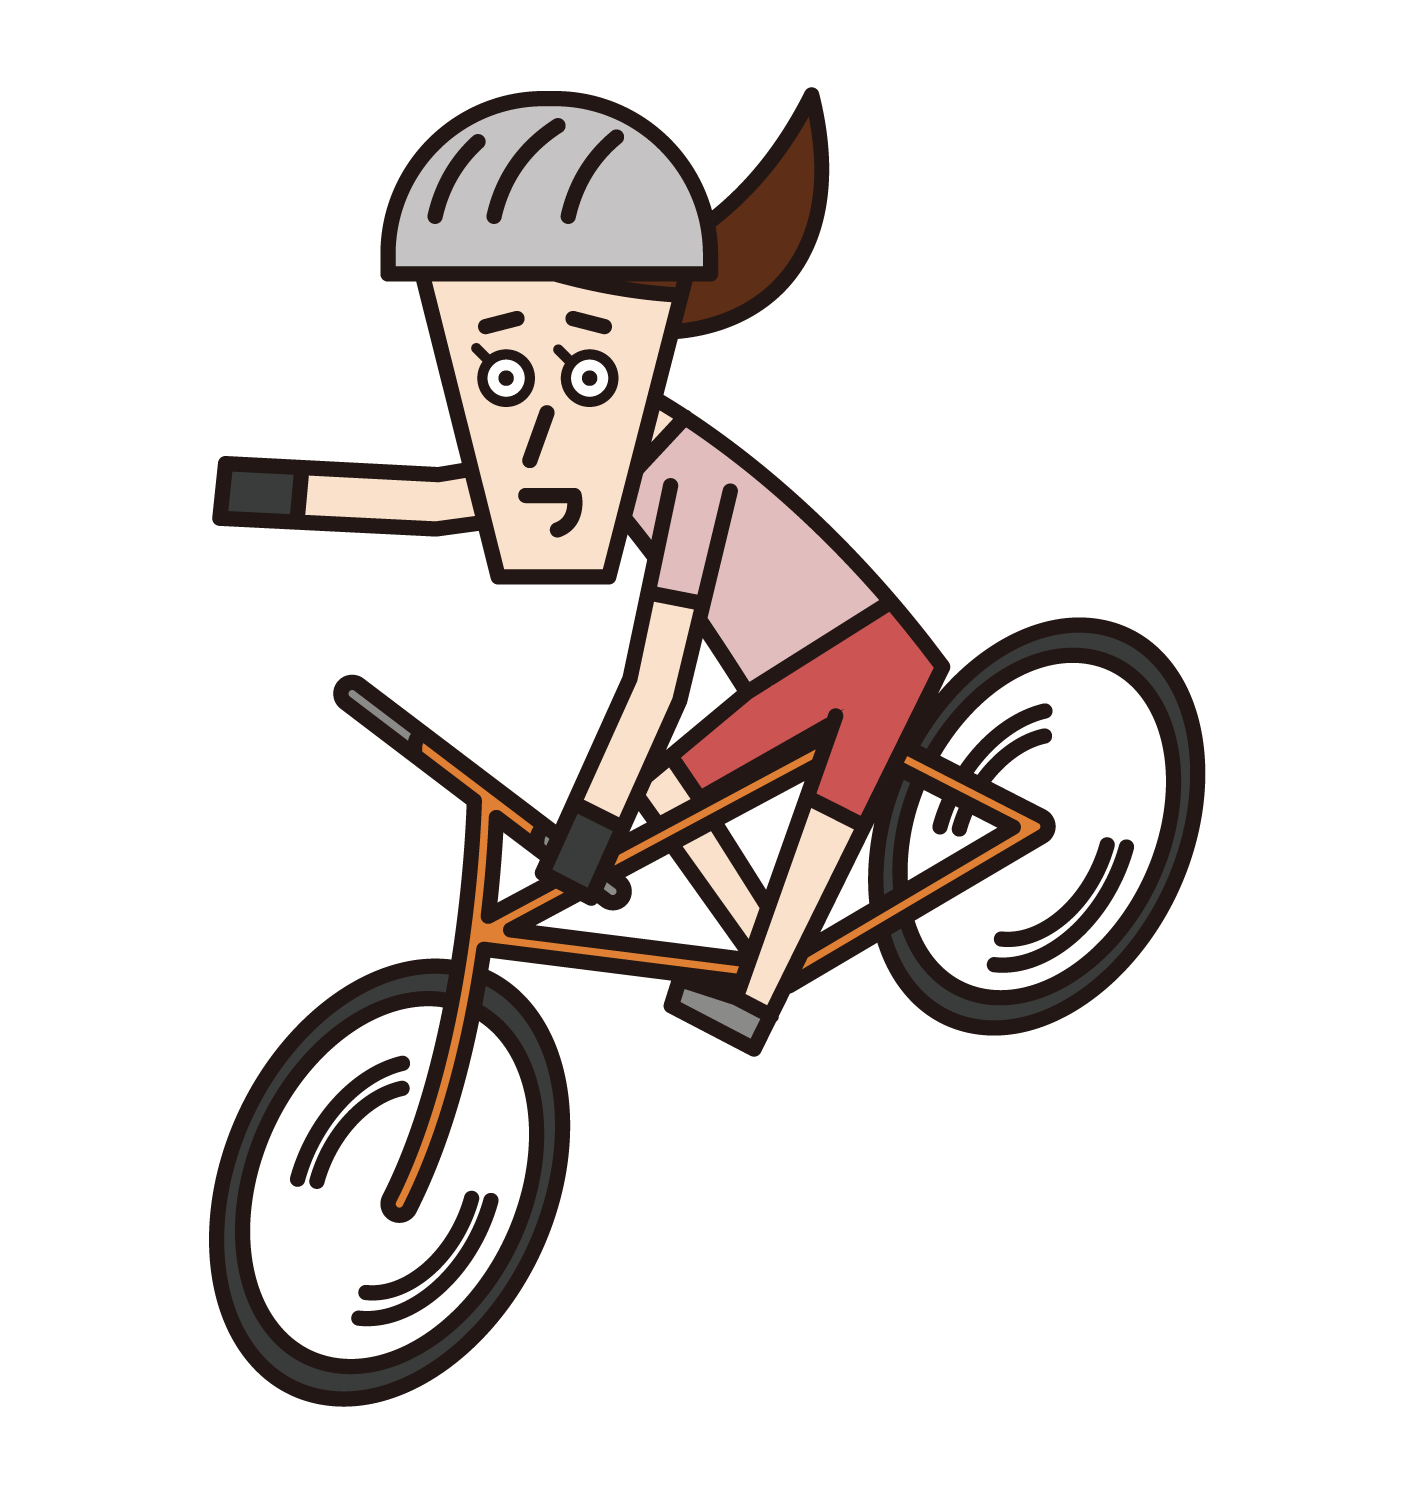 핸드 시그널(손 표지판)이 있는 자전거 타기(남성)의 일러스트